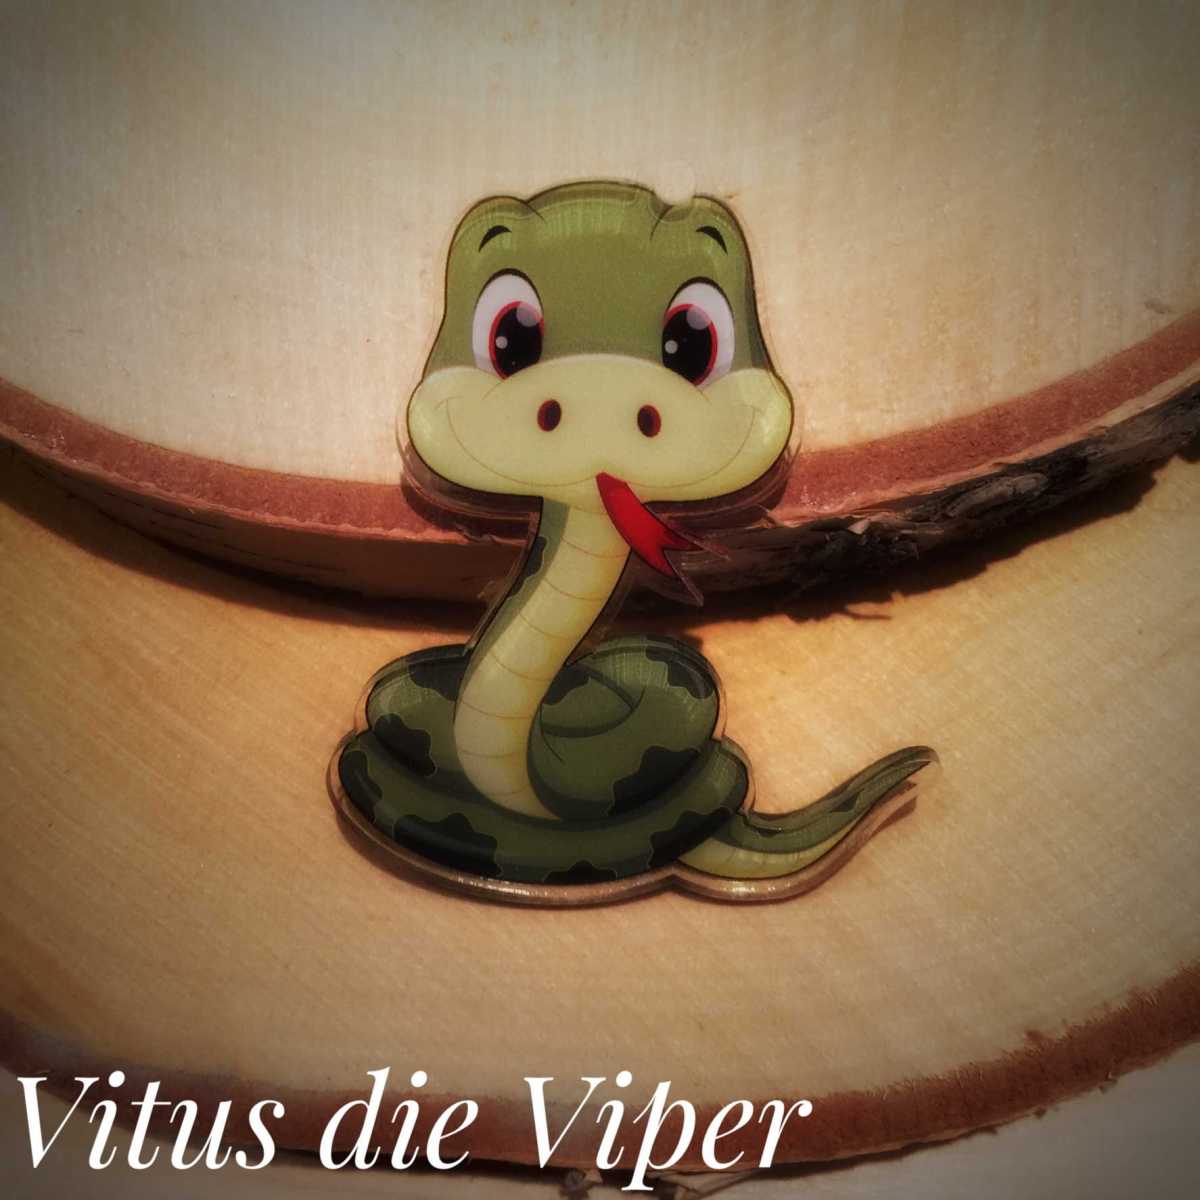 "Vitus die Viper"